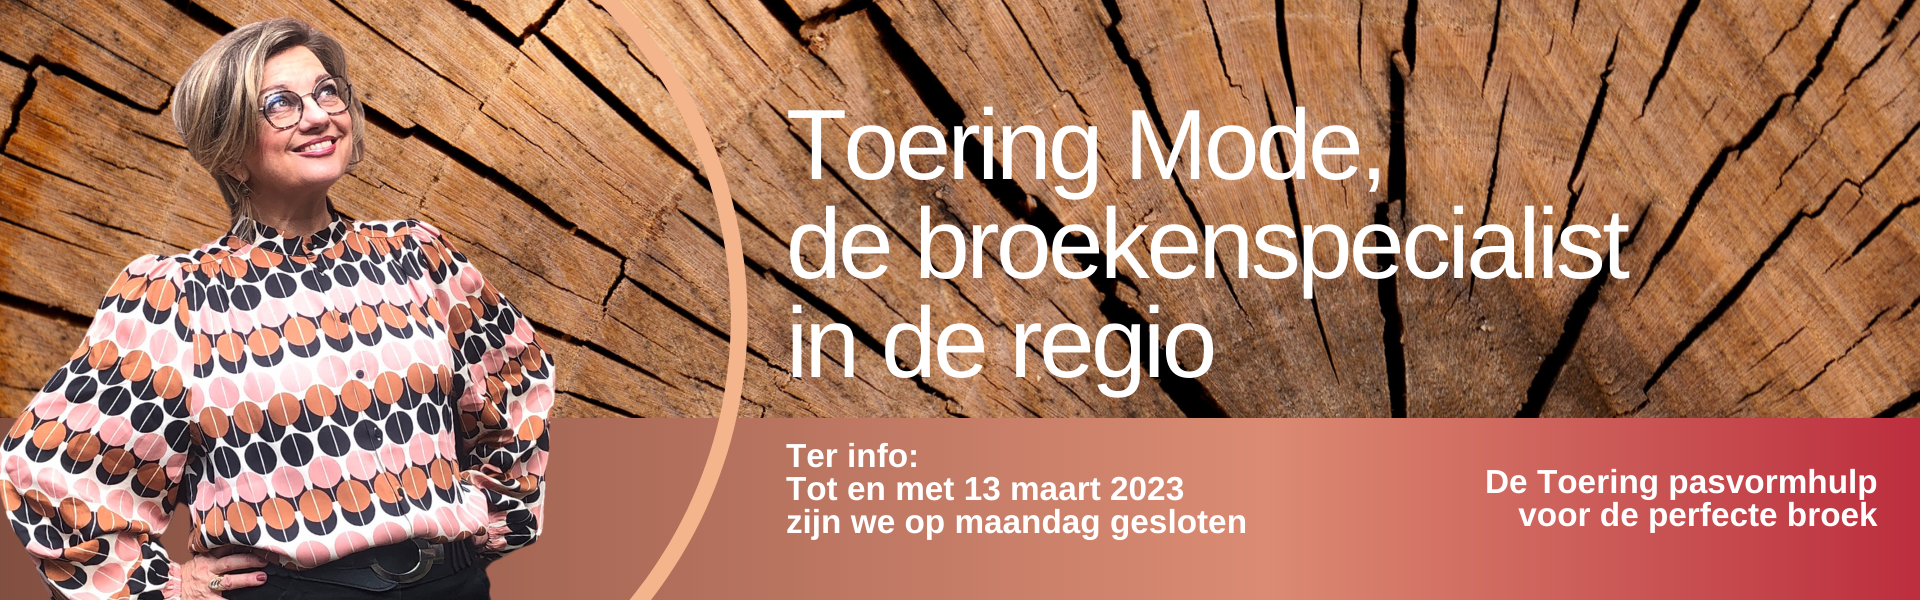 Toering Mode, de broekenspecialist in Friesland